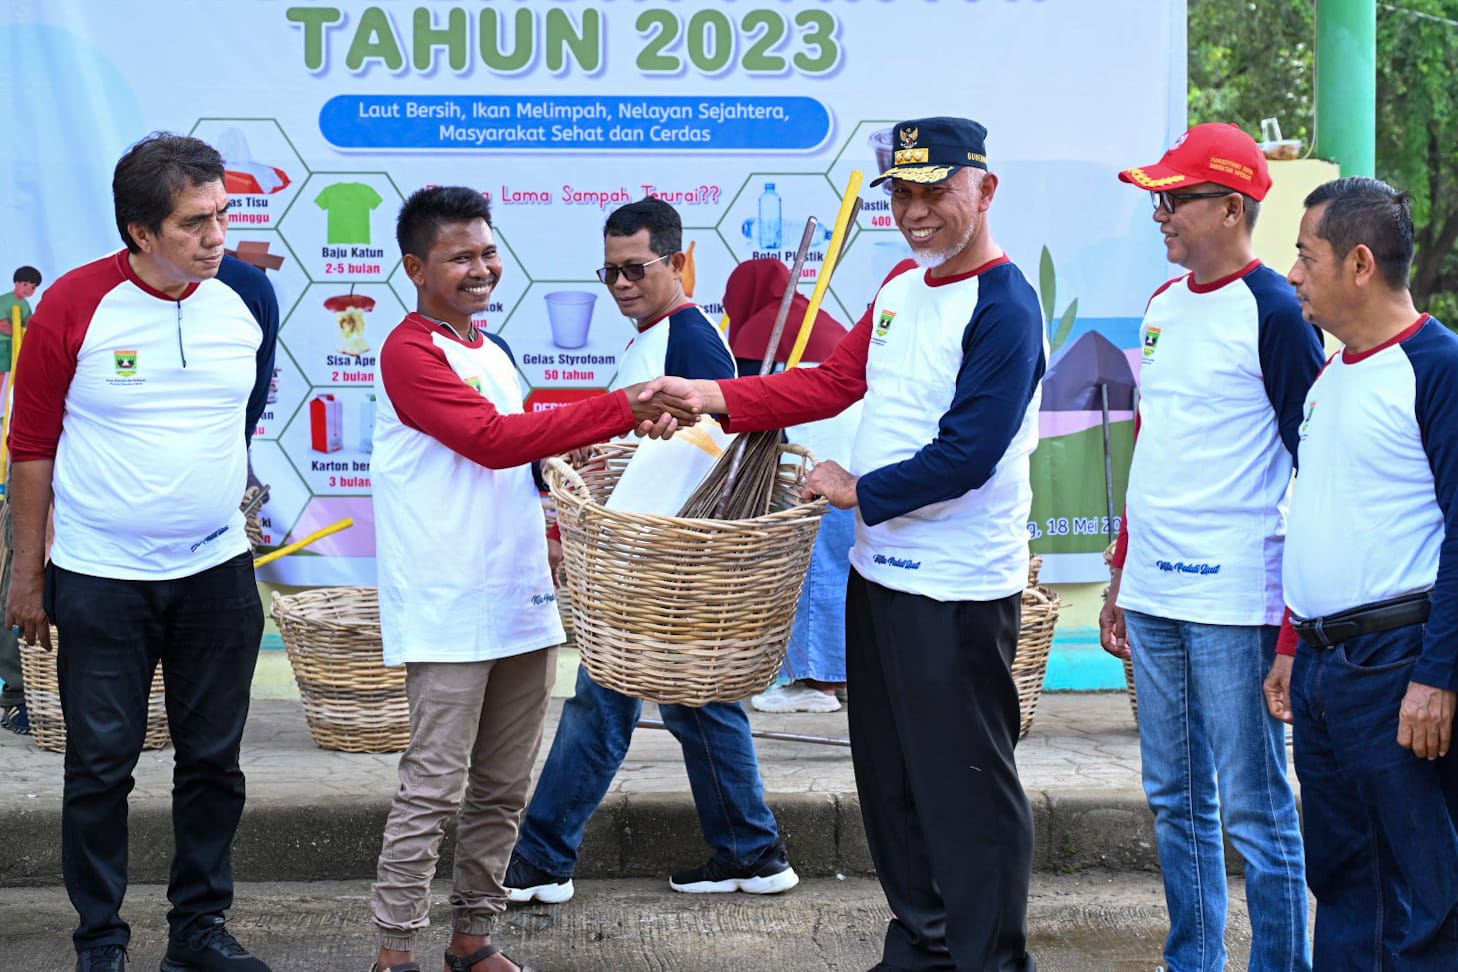 Aksi Bersih Pantai Tahun 2023 di kawasan Pantai Air Manis Padang yang mengusung tema "Laut Bersih, Ikan Melimpah, Nelayan Sejahtera, Masyarakat Sehat dan Cerdas", Kamis (18/5/2023).